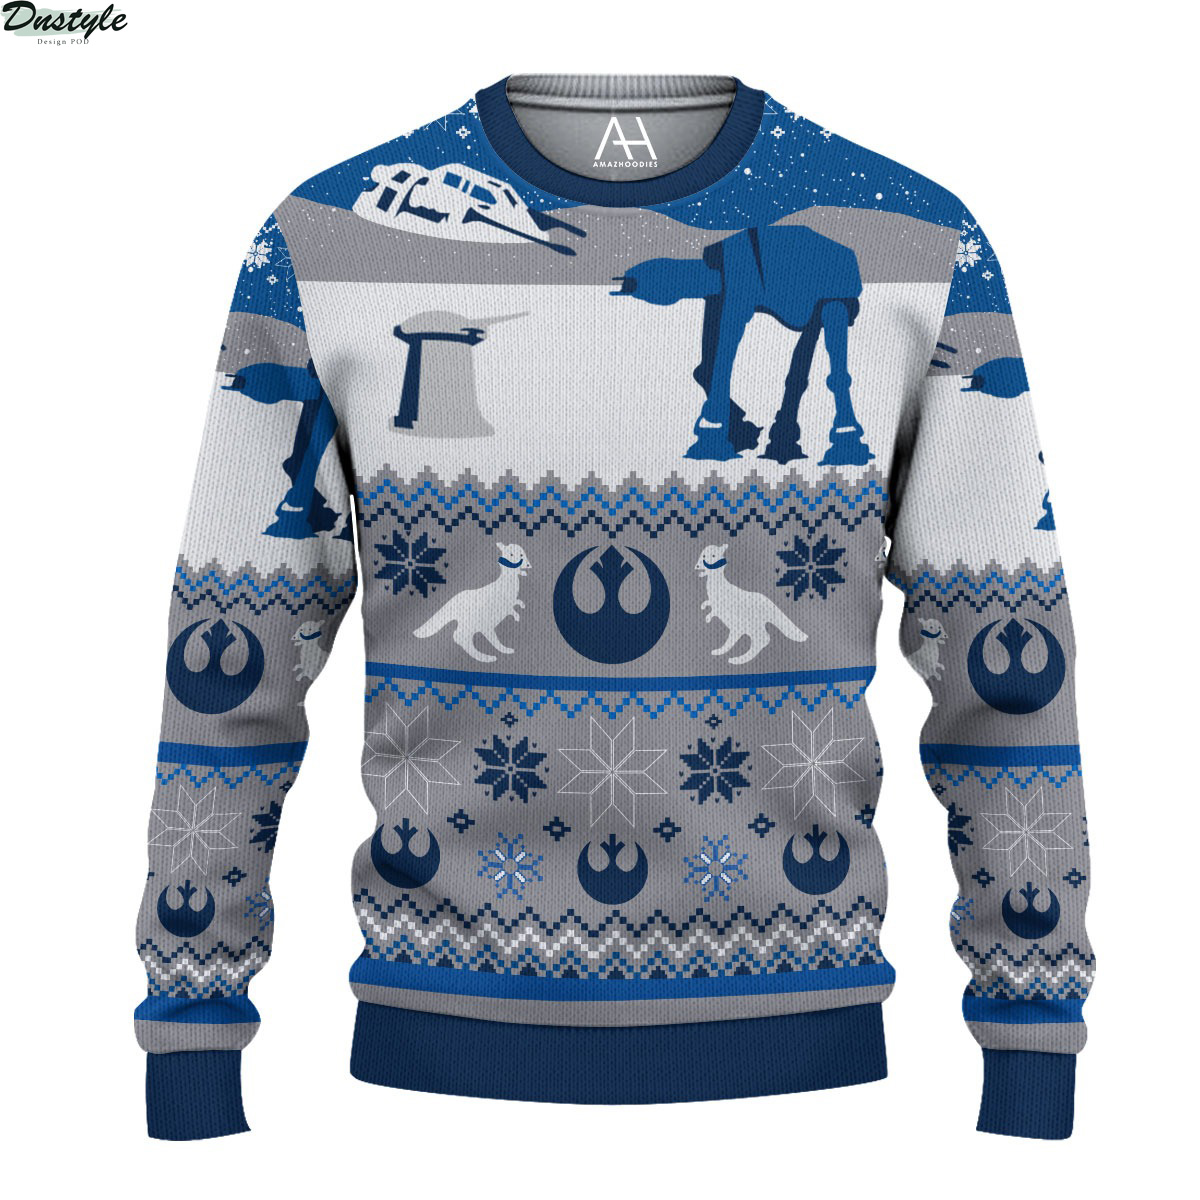 Star Wars AT-AT Walker Ugly Christmas Sweater